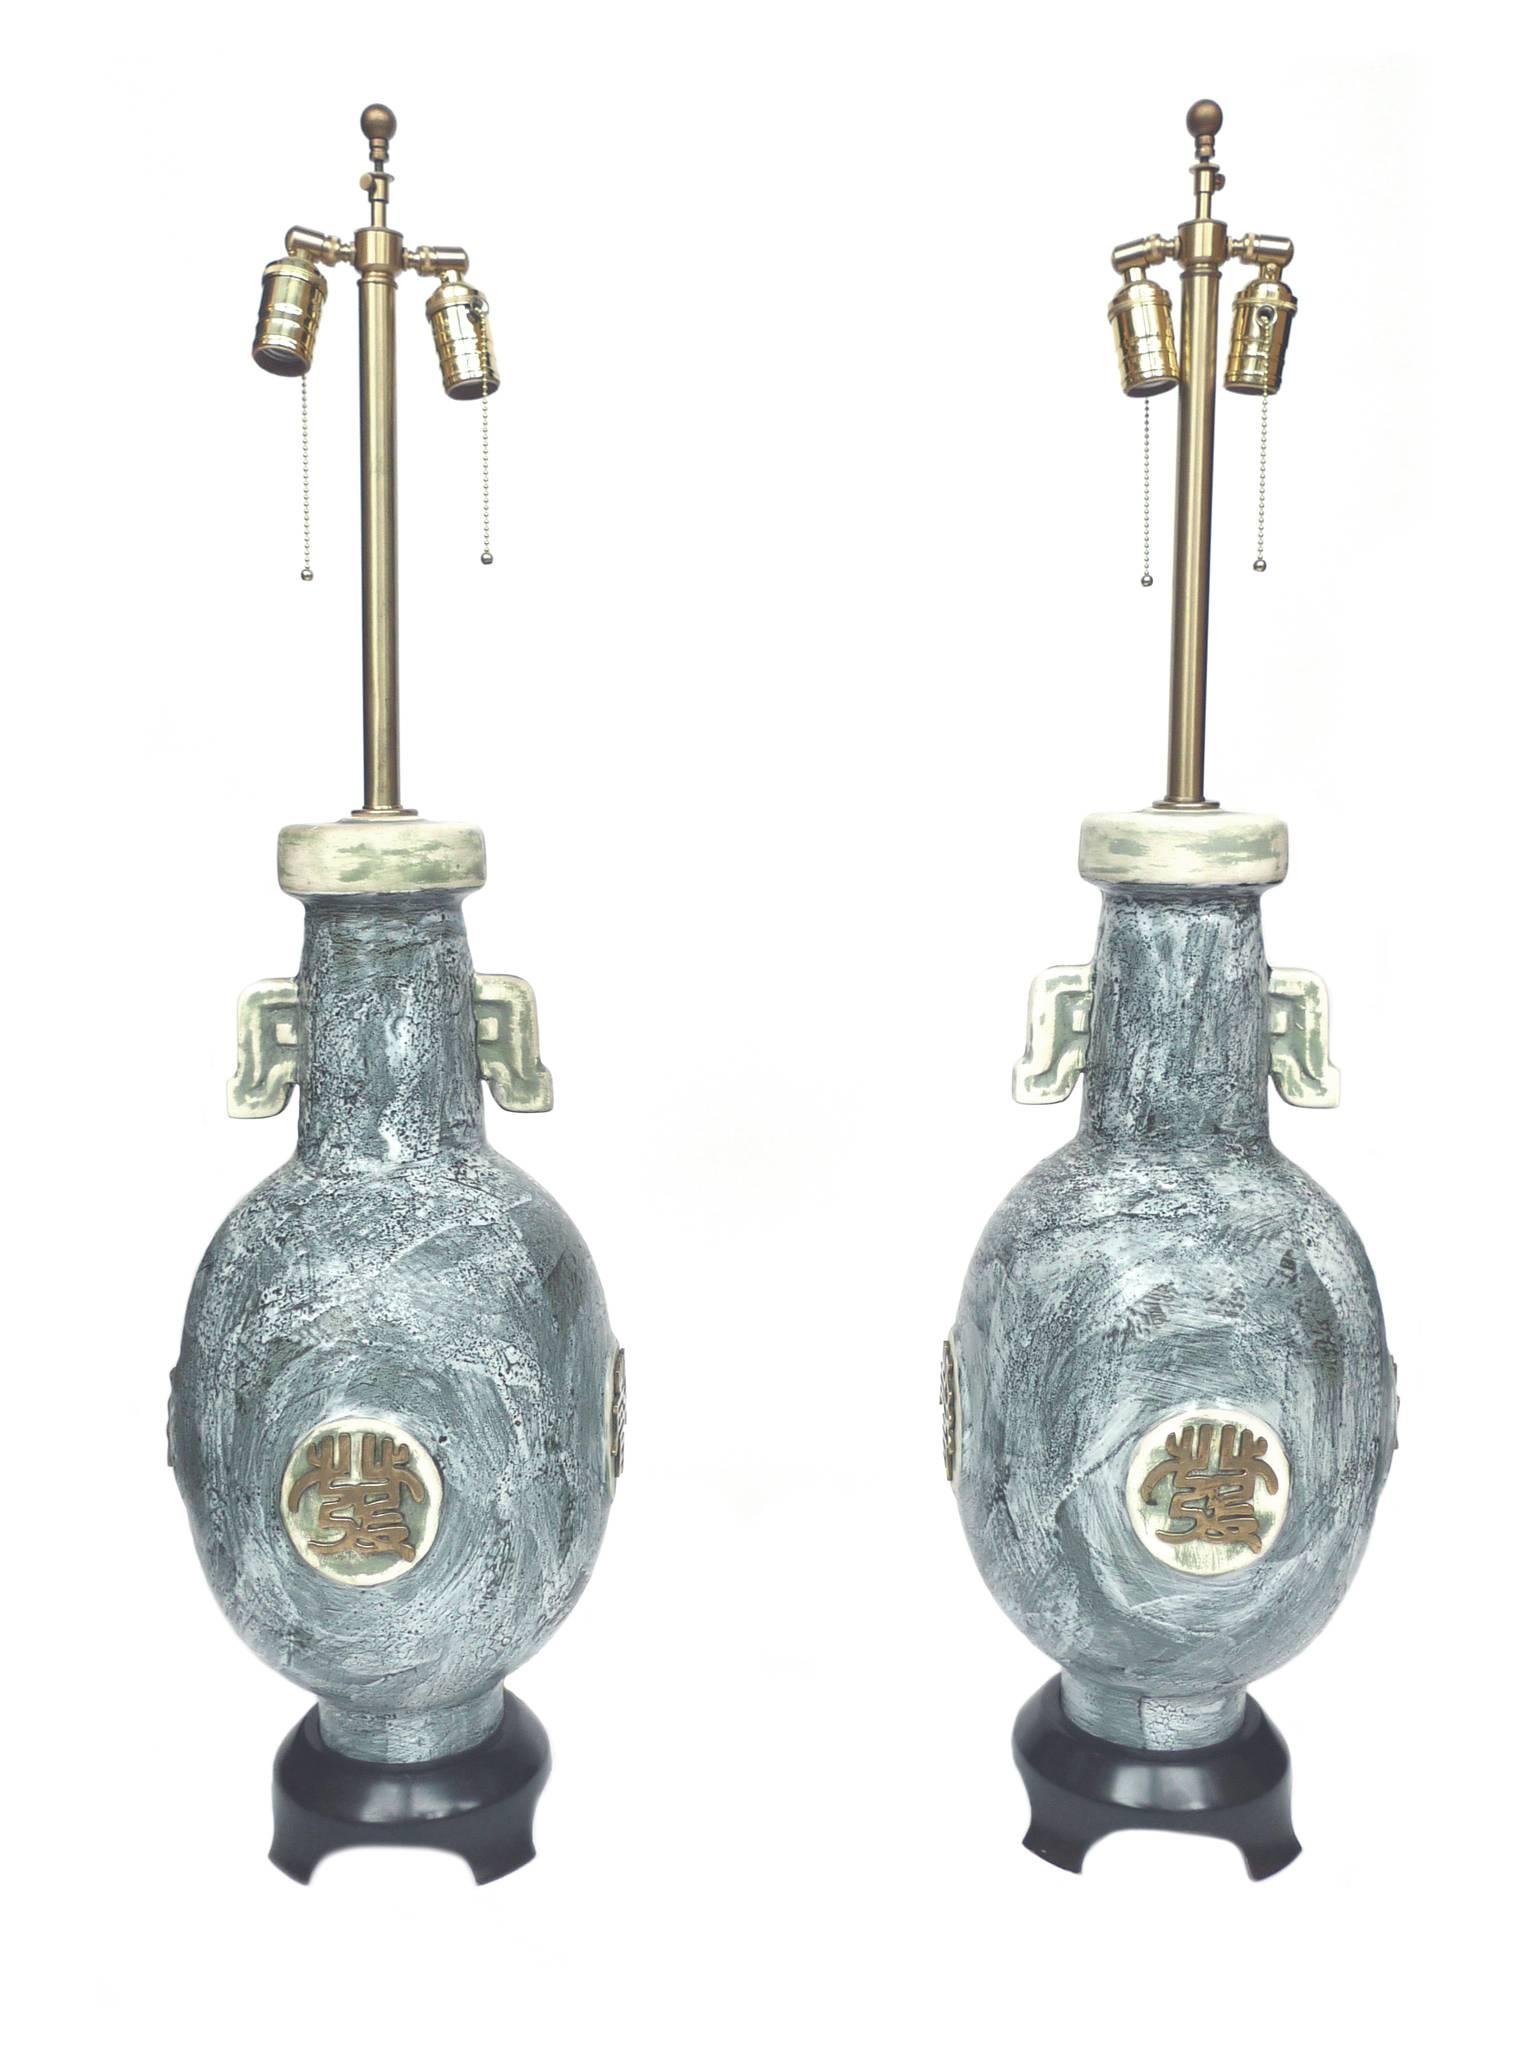 Estas lámparas fueron fabricadas por The Marbro Lamp Company. Su diseño incluye un cuerpo de jarra de cerámica con un pintoresco esmalte gris azulado y estilizadas decoraciones de latón que adornan cada lado de la lámpara. Las bases son de madera